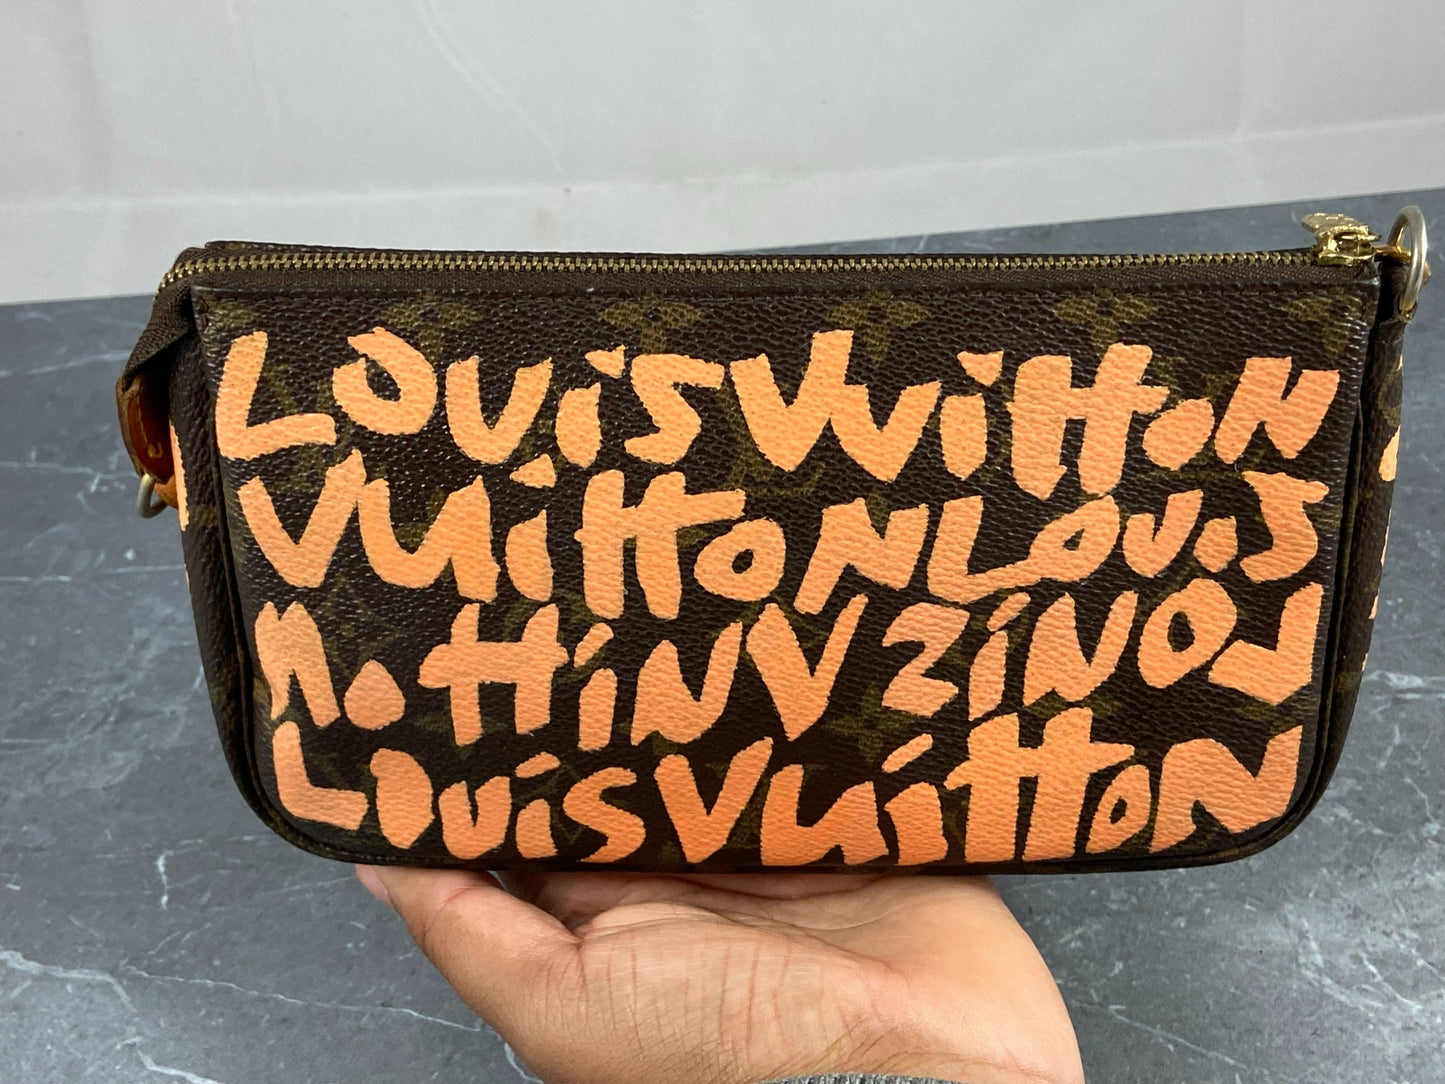 Louis Vuitton x Stephen Sprouse Pochette Accessoires Graffiti Orange